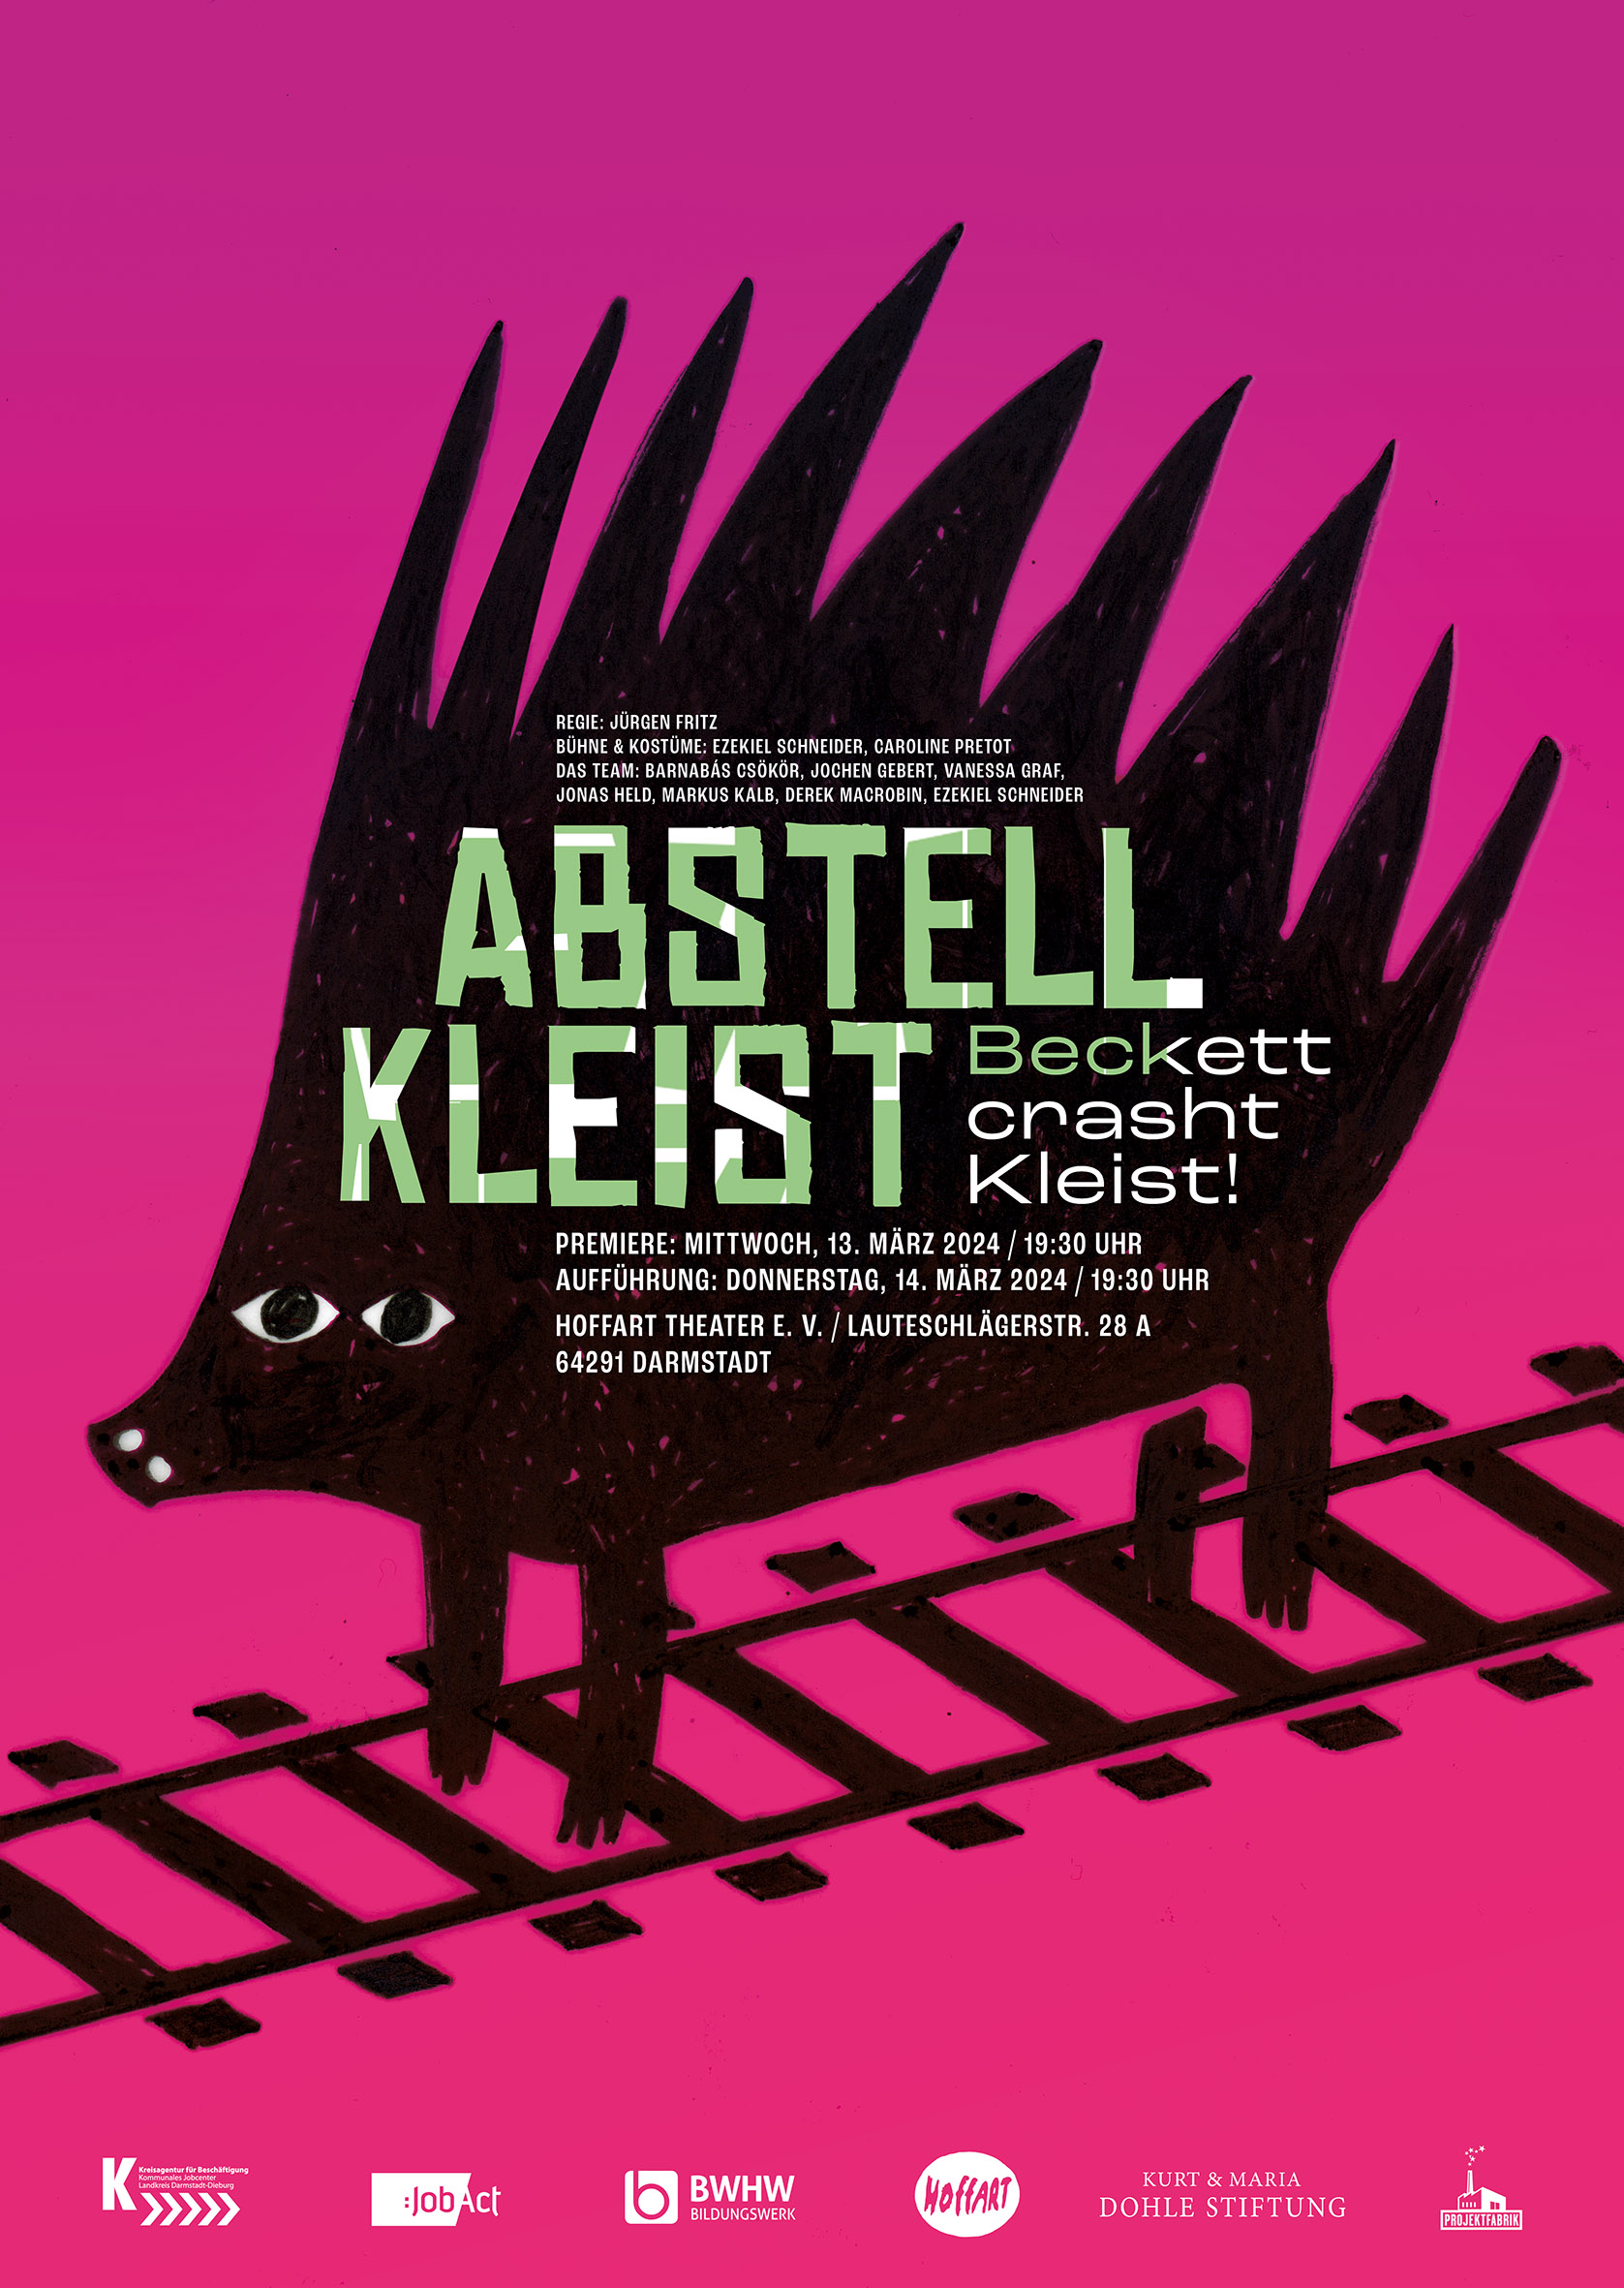 Theater Premiere „Abstellkleist“ Beckett crasht Kleist!